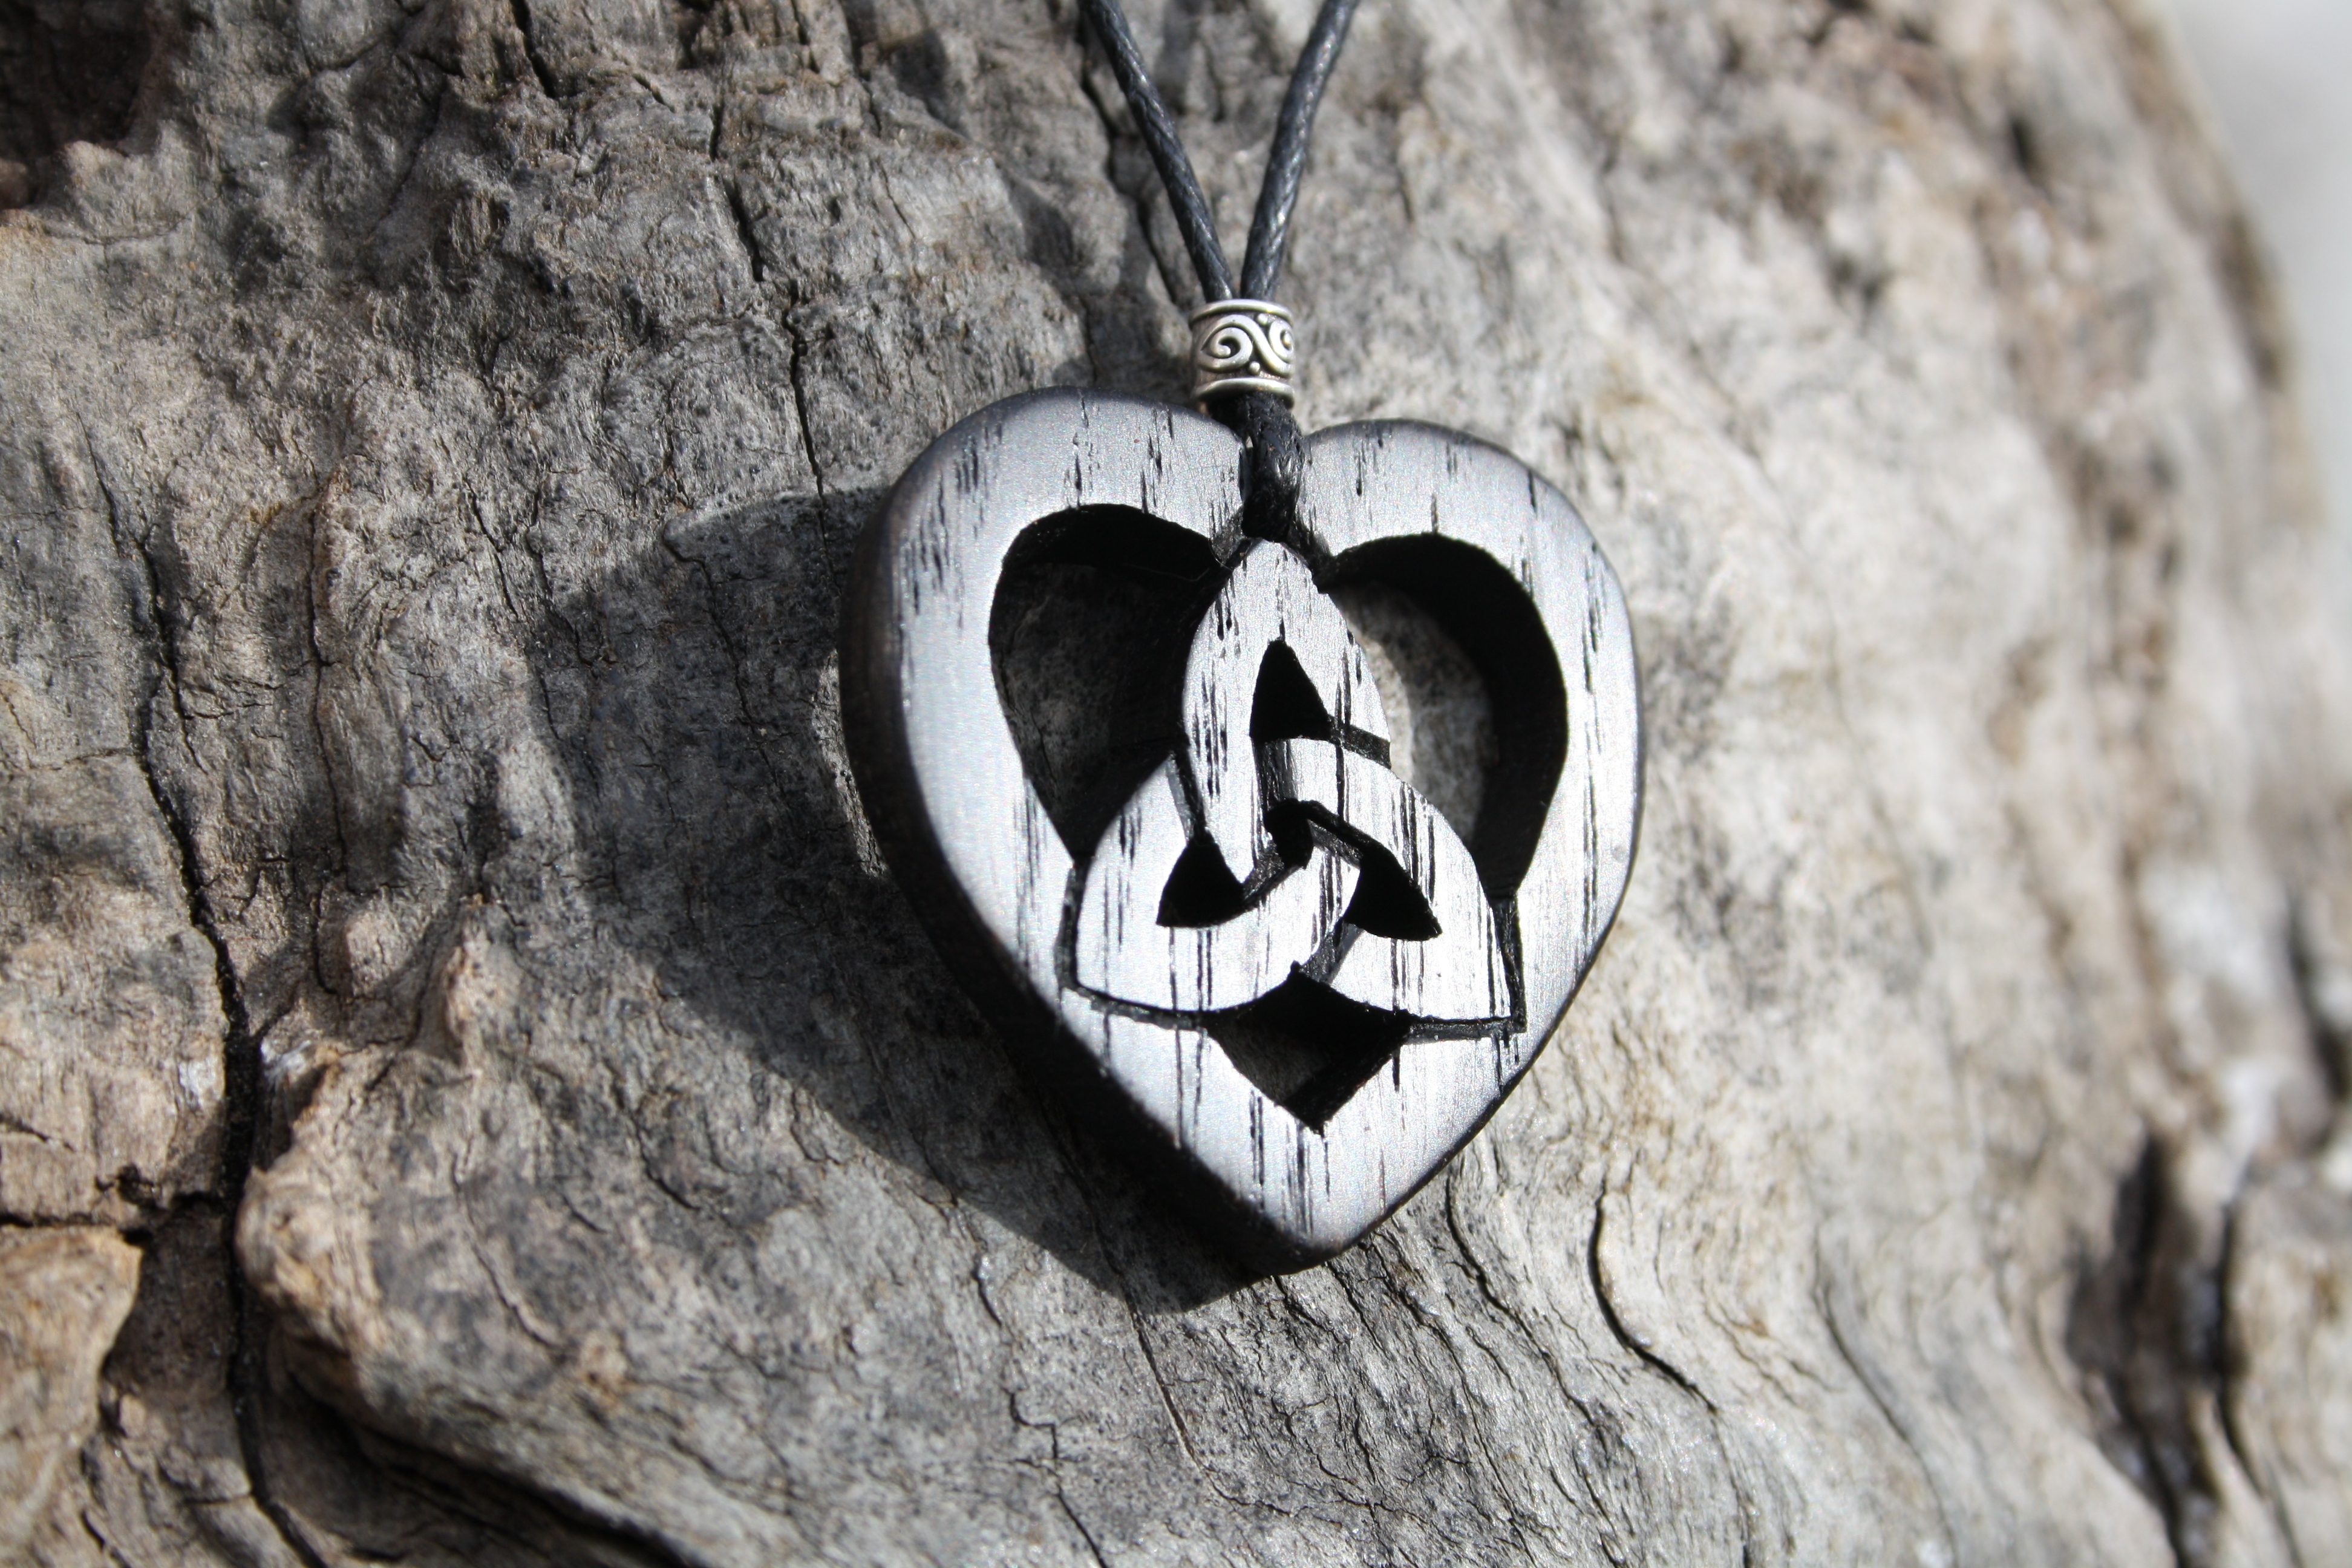 celtic trinity knot heart